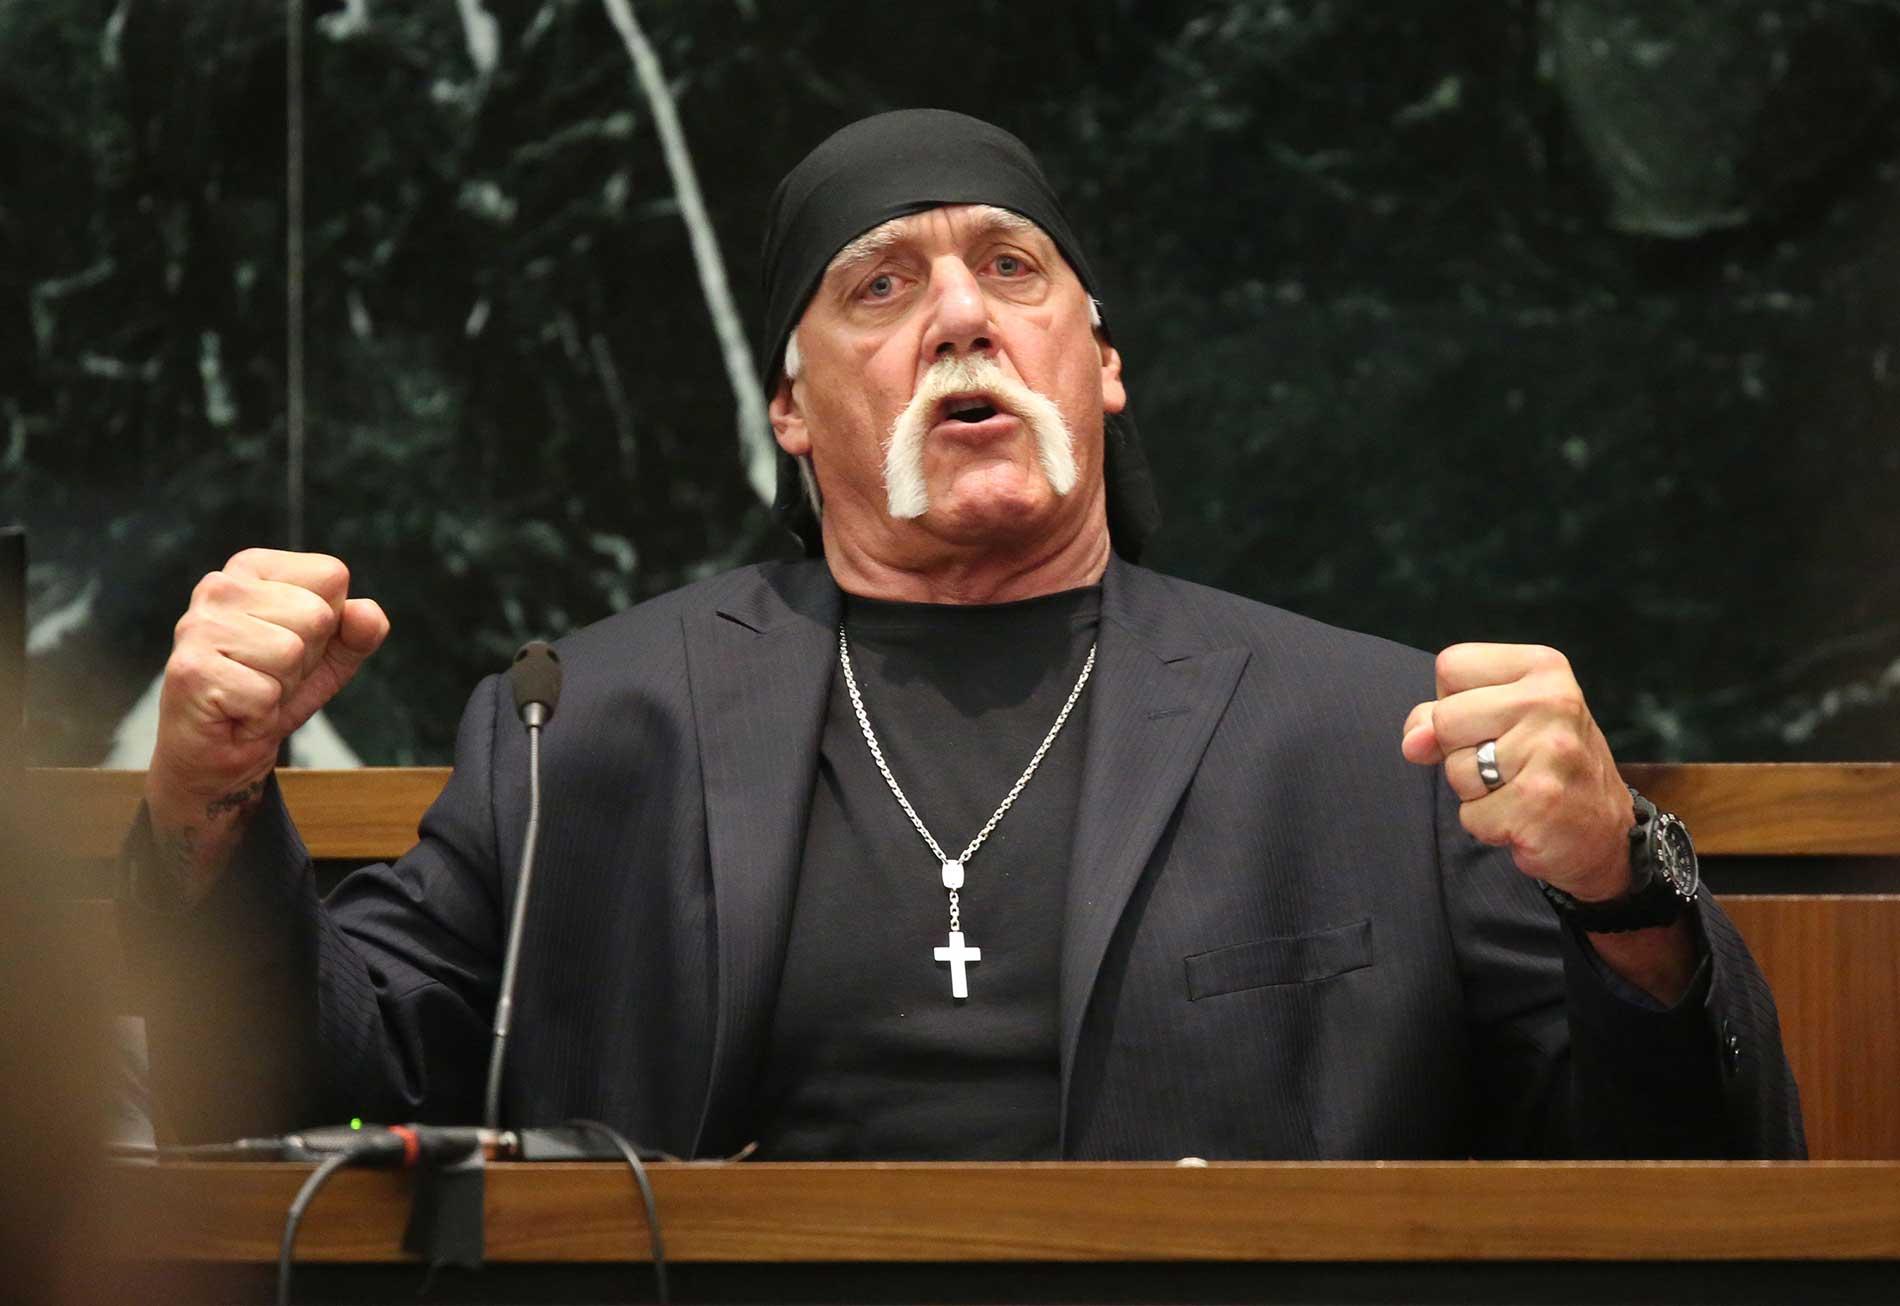 Terry Bollea, mer känd som Hulk Hogan, får nu fler miljoner i ersättning efter läckaget av hans sexfilm.